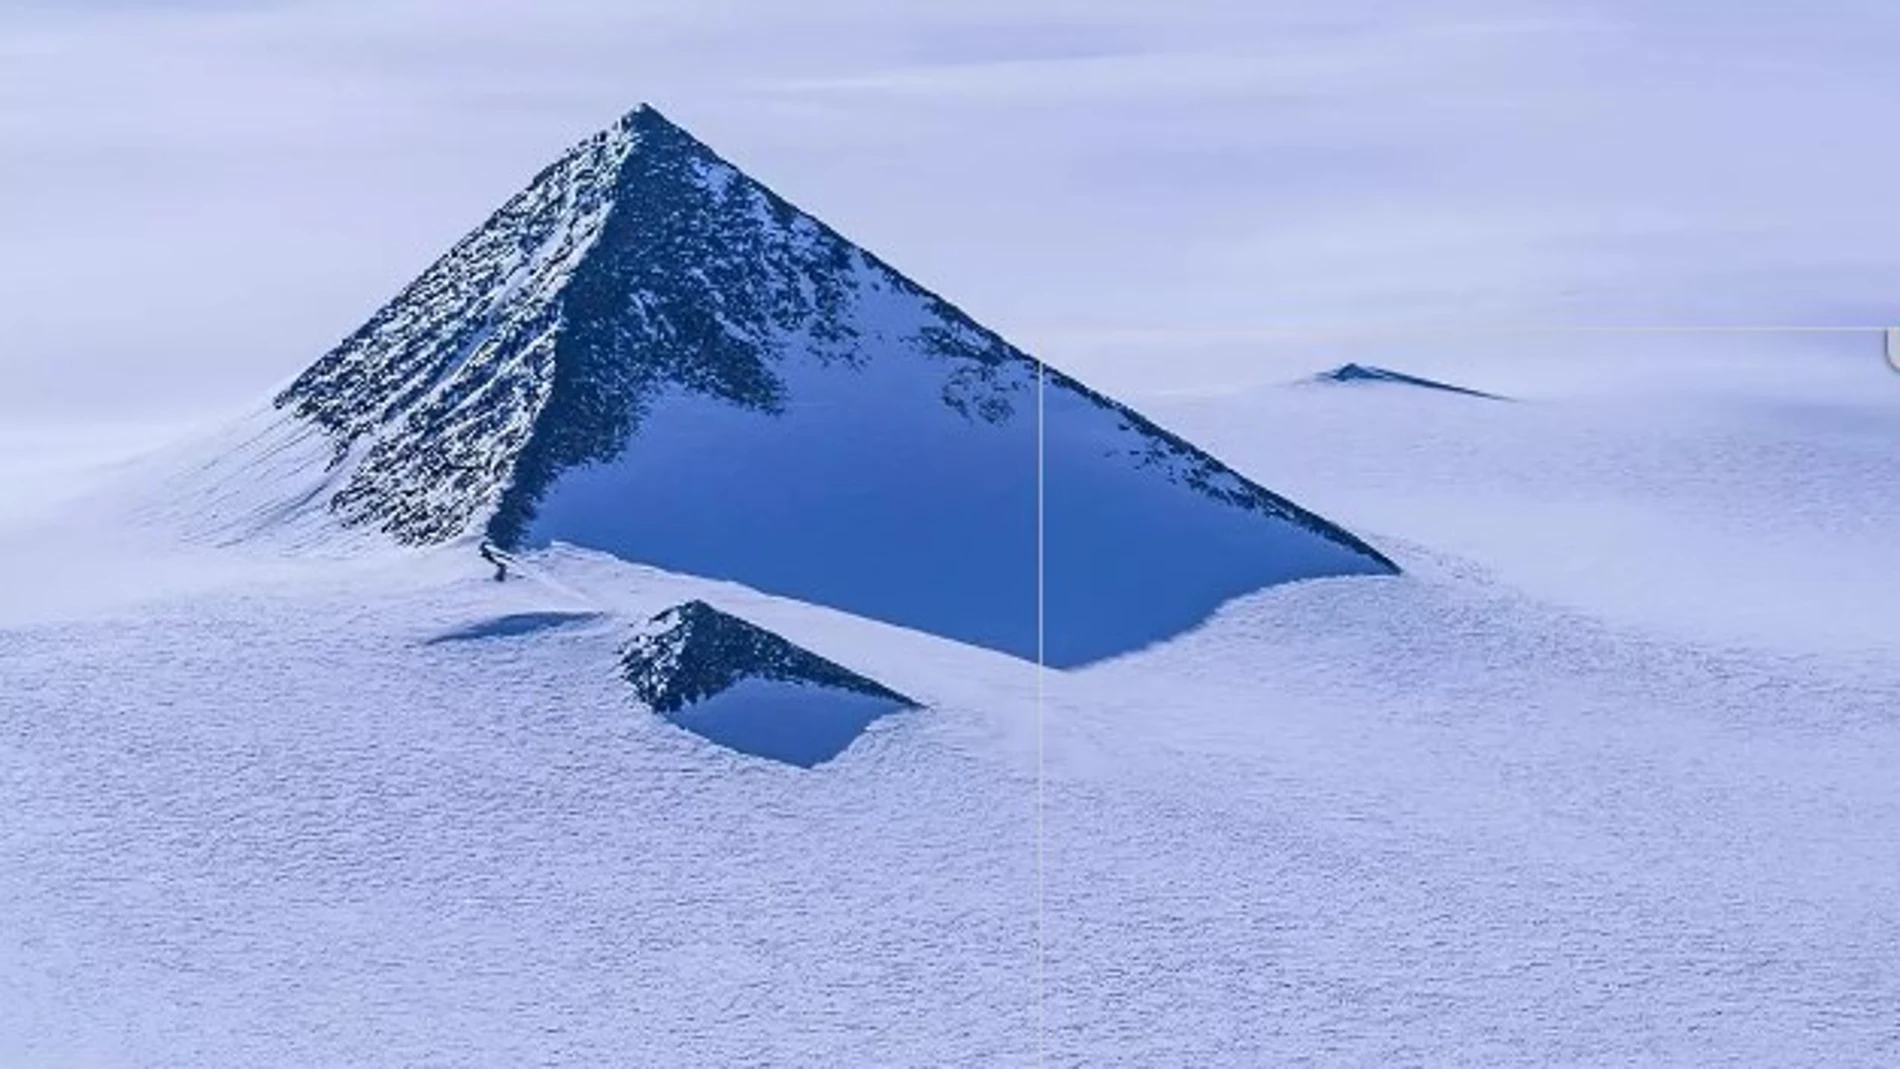 La pirámide guarda especial parecido con las del Antiguo Egipto y puede verde a través de Google Earth